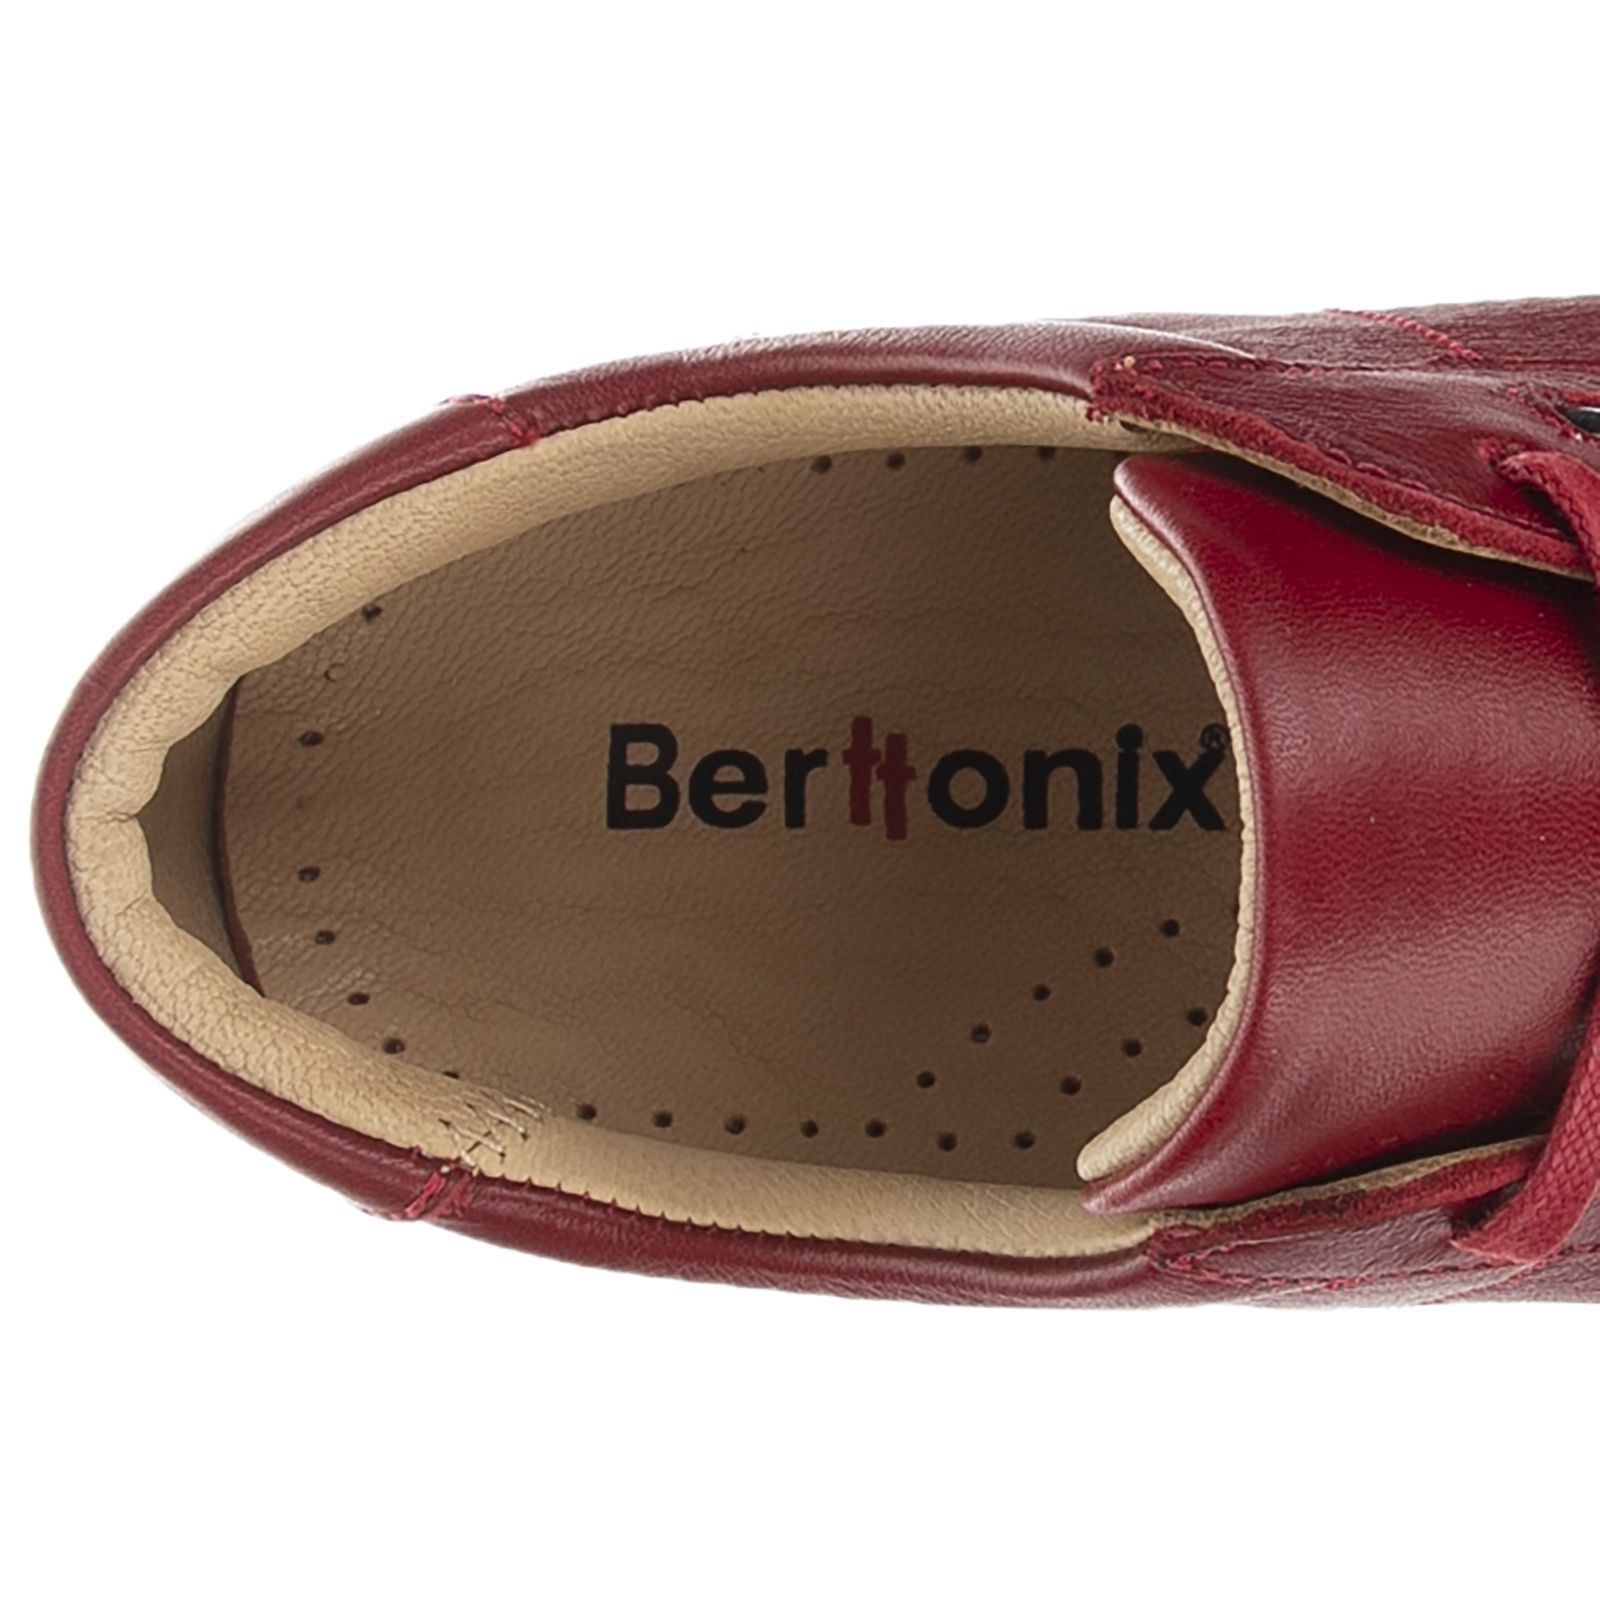 کفش روزمره زنانه برتونیکس مدل 730-24 - قرمز - 8